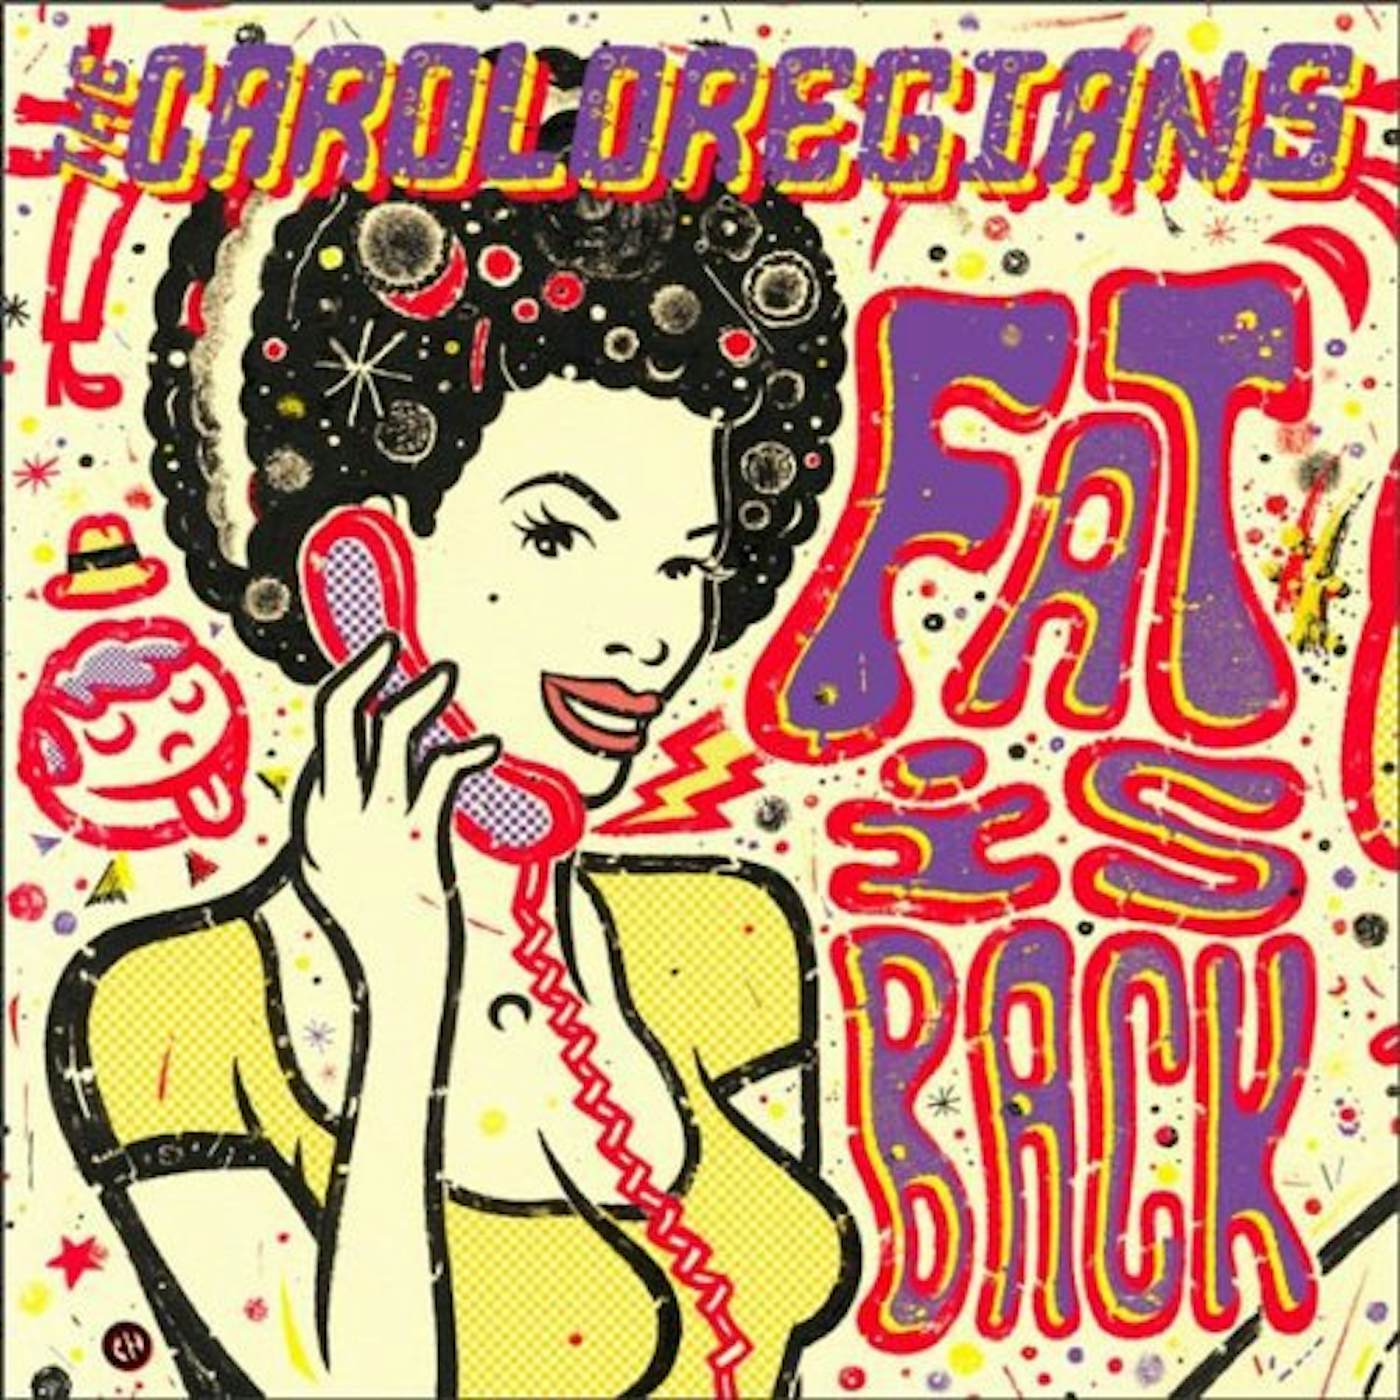 The Caroloregians Fat Is Back Vinyl Record